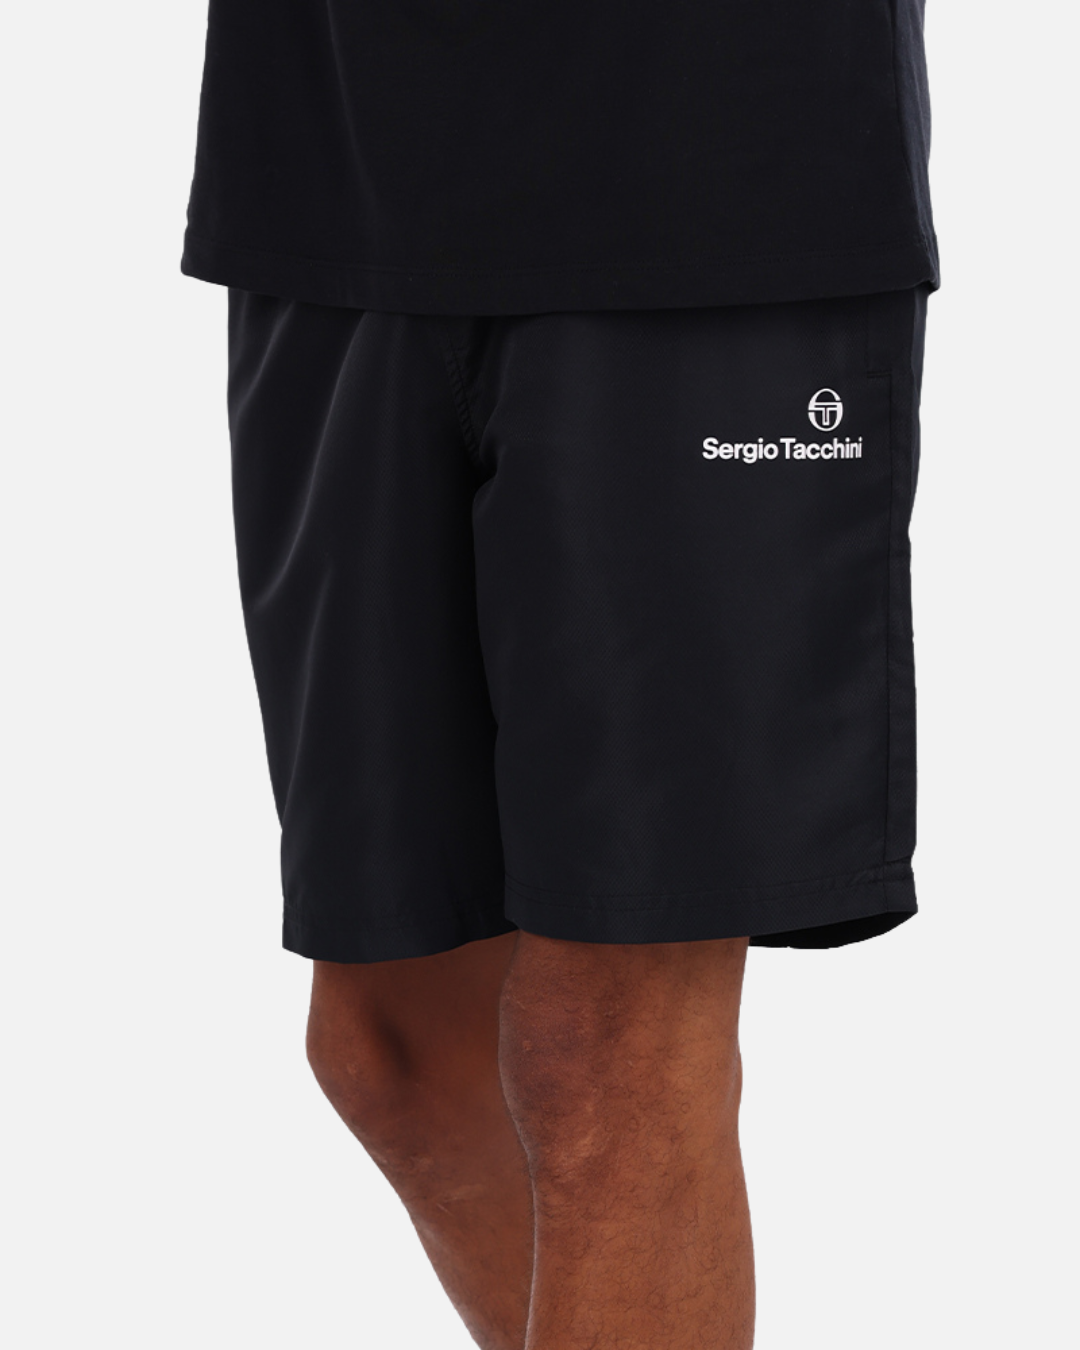 Sergio Tacchini Plug In Shorts - Black/White/Green